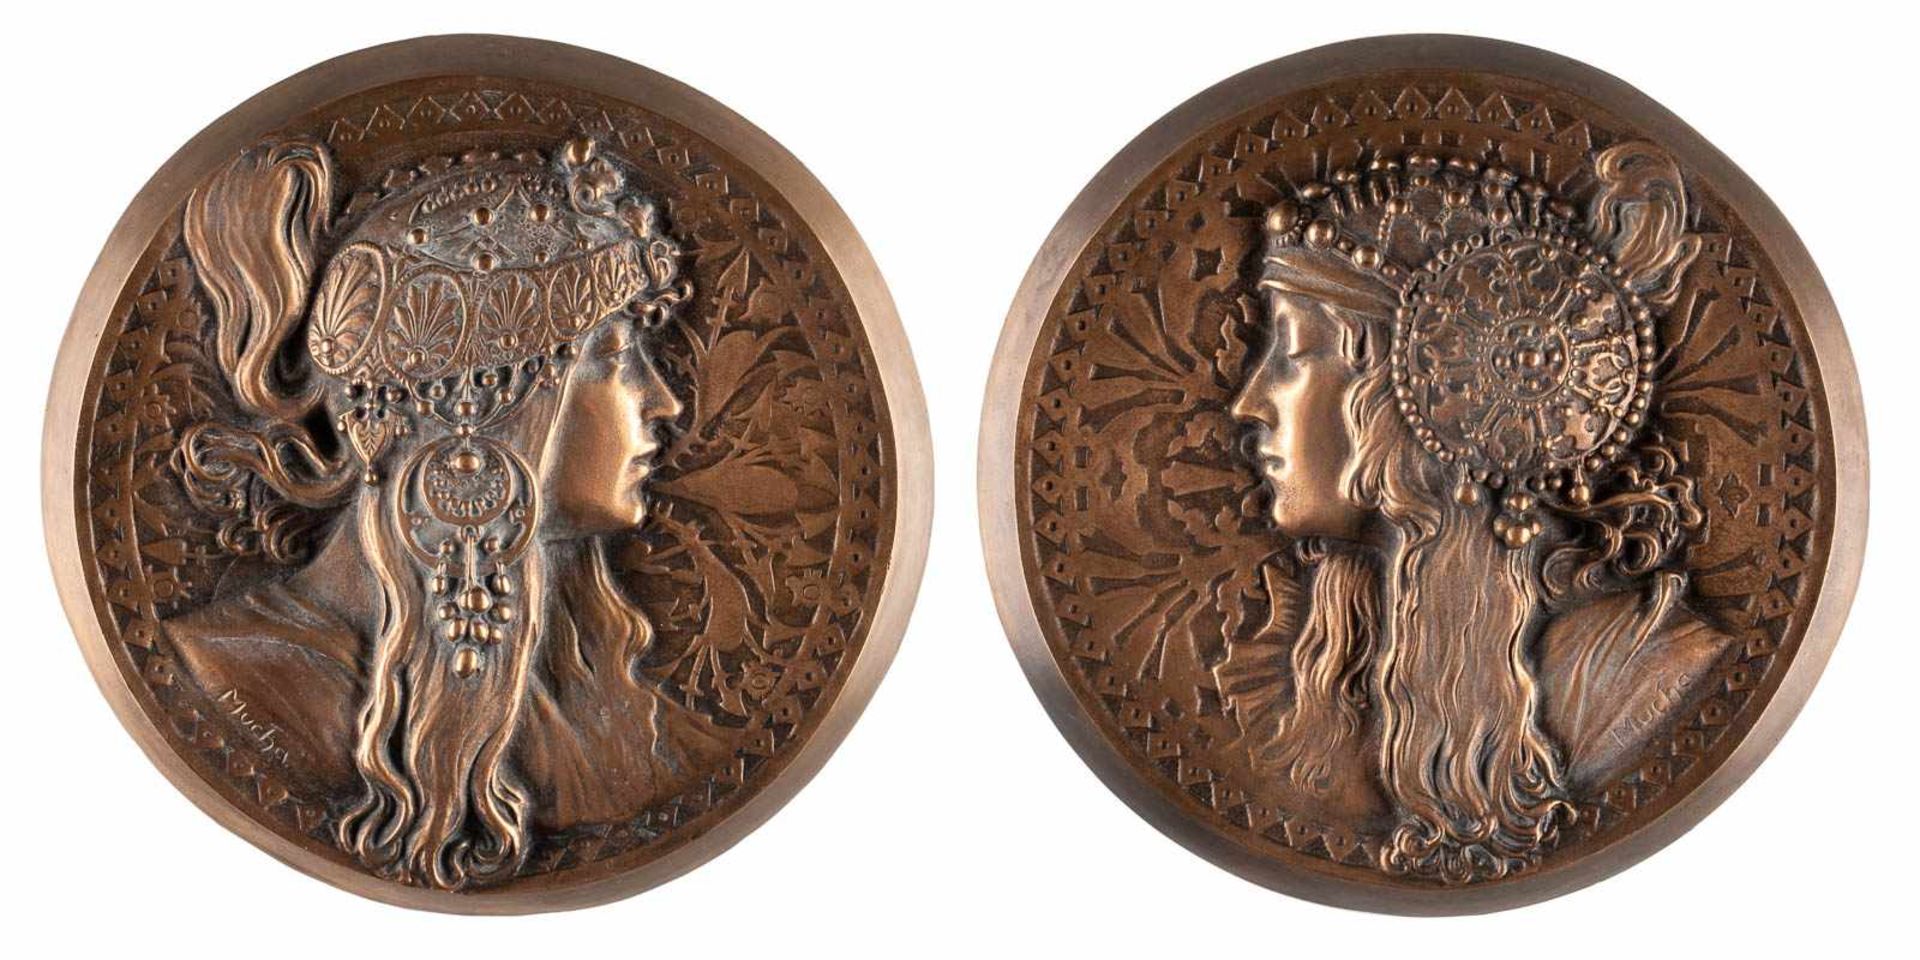 ALPHONSE MARIA MUCHA1860 Ivancice - 1939 PragTÊTES BYZANTINES 2 Bronzereliefs. D. 21 cm. Seitlich